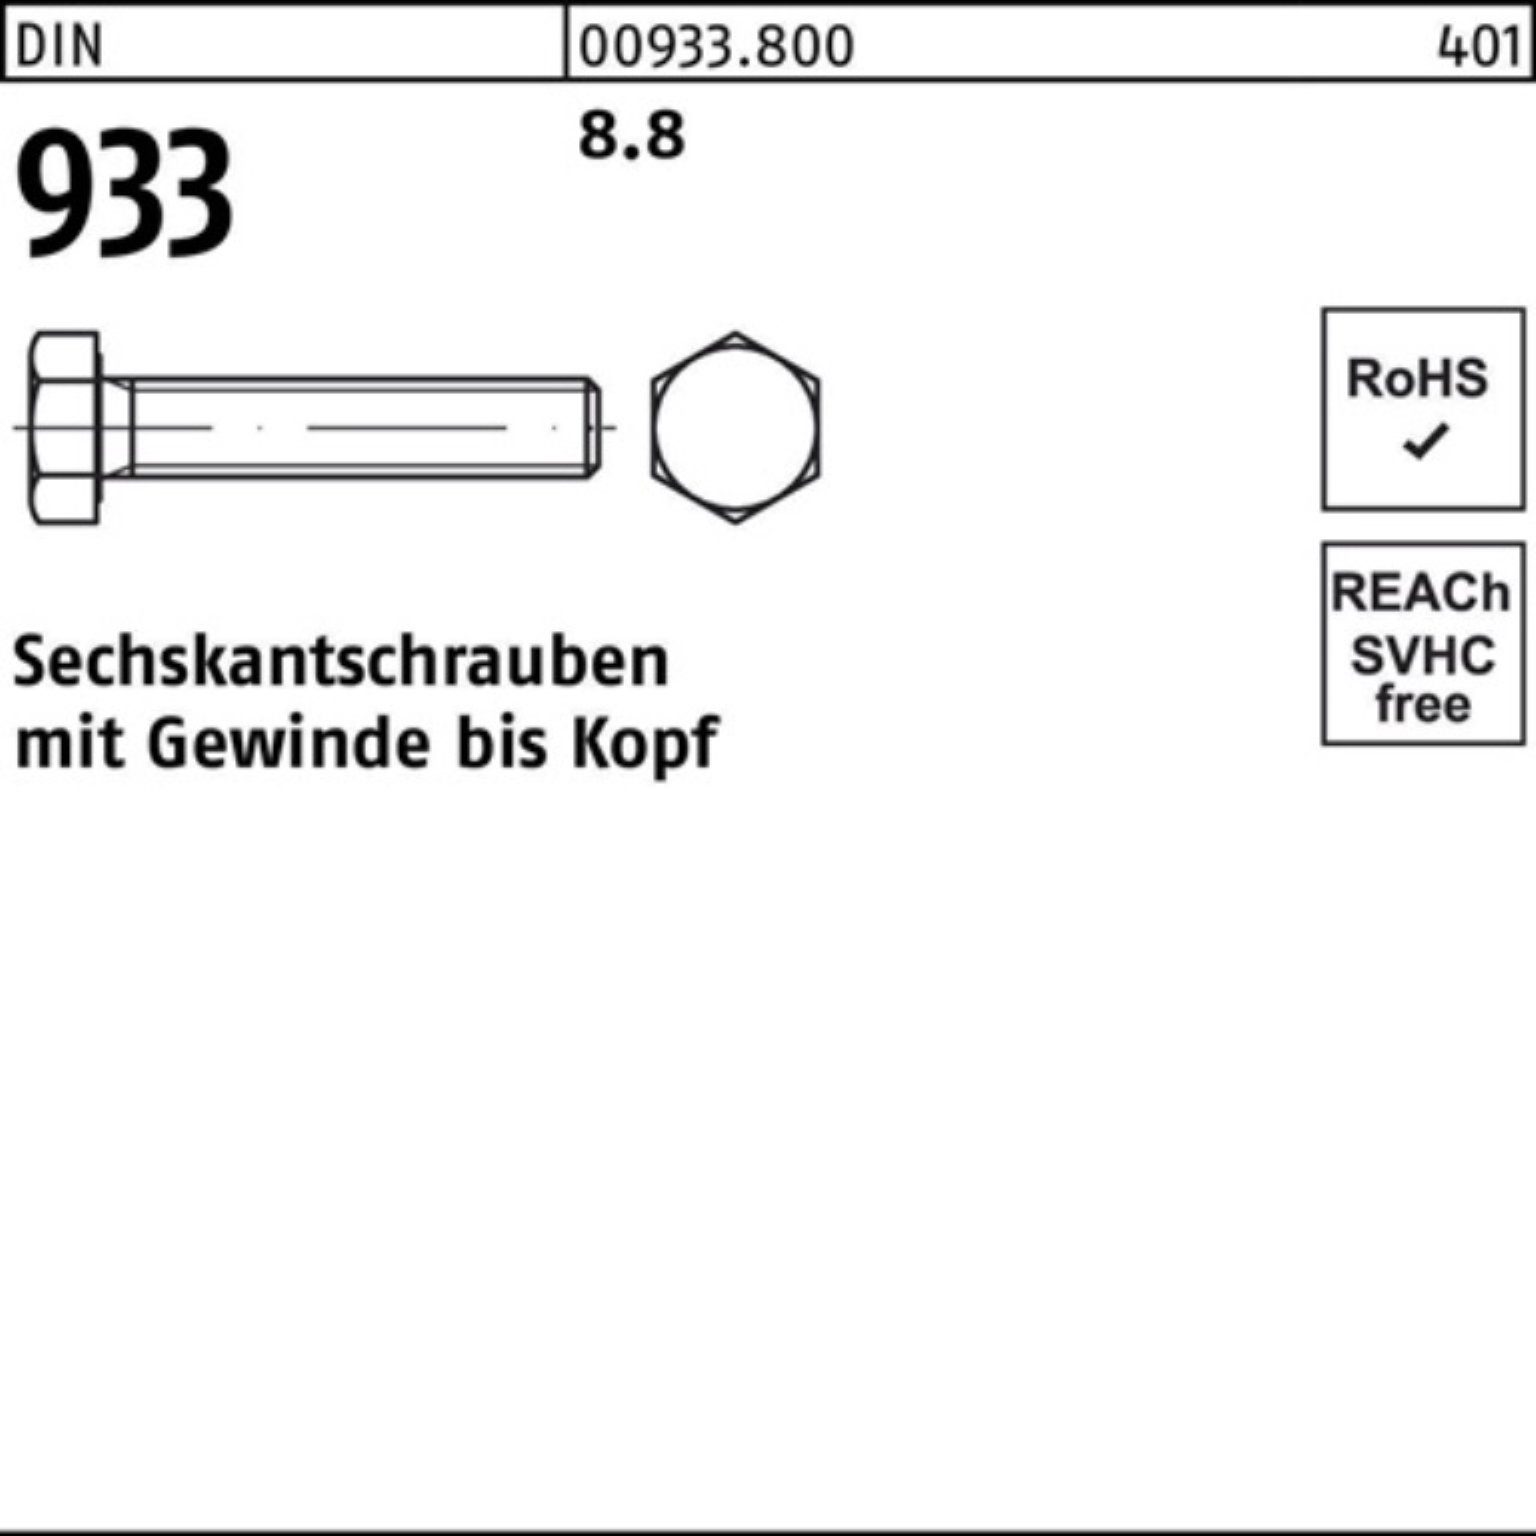 Sechskantschraube 12 8.8 Stück 933 100er DIN DIN M5x VG 100 933 Sechskantschraube Reyher Pack